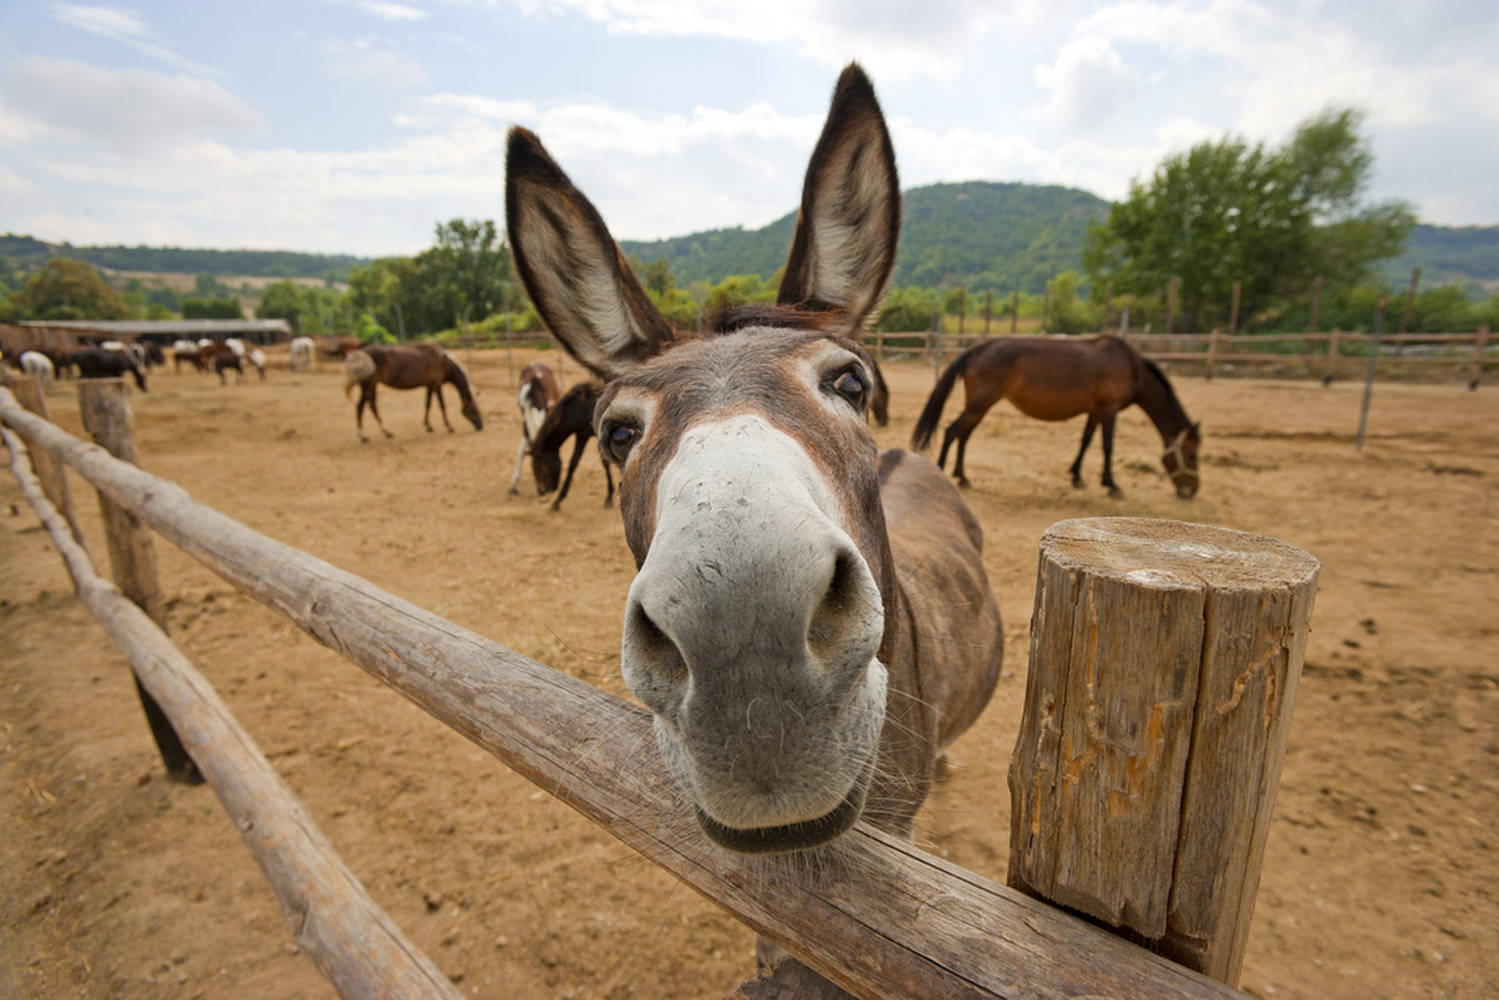 Big Donkey Nose Background